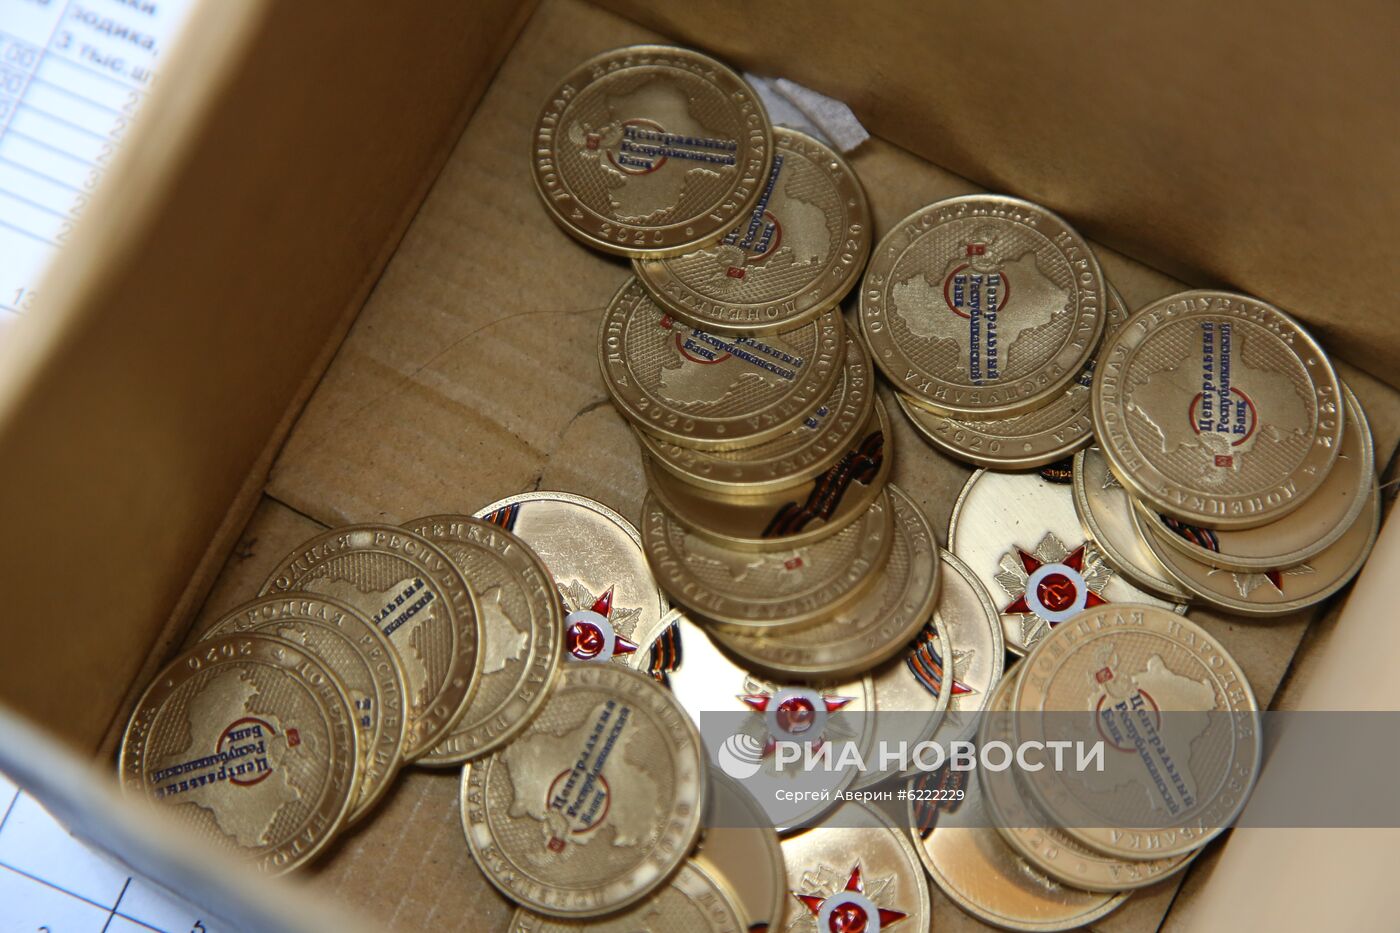 Памятные знаки к 75-летию Победы в ВОВ начали выпускать в Донецке